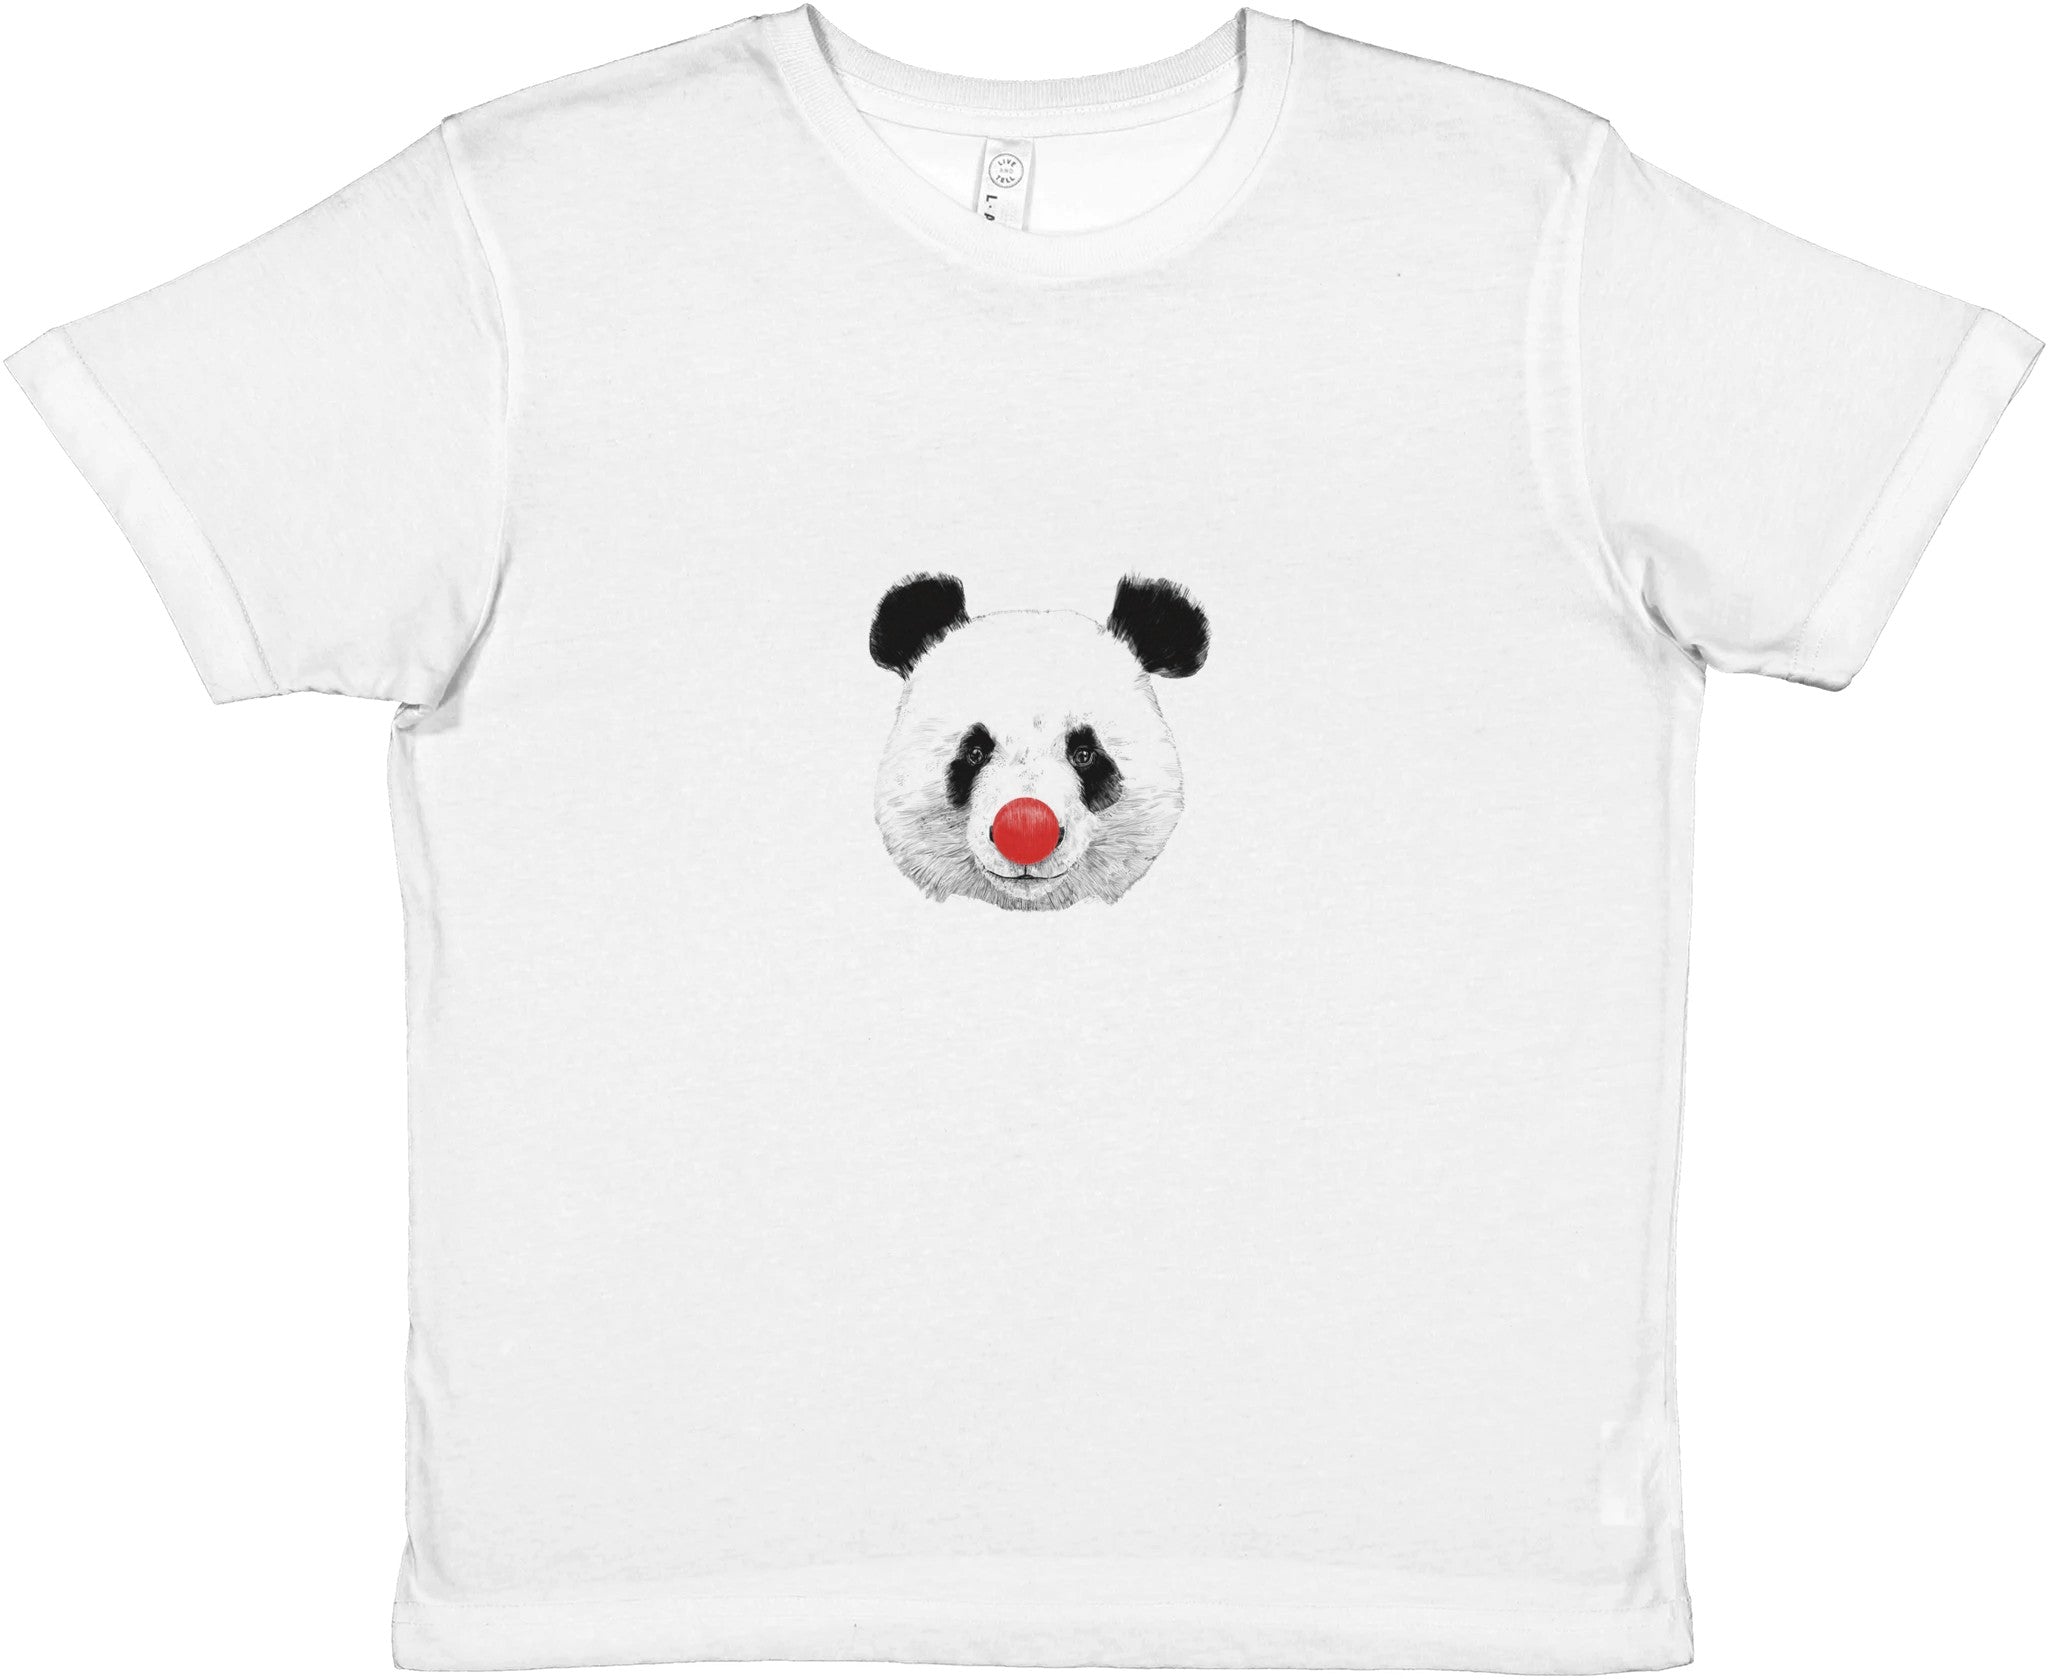 Clown Panda Kids Crewneck T-shirt - Optimalprint